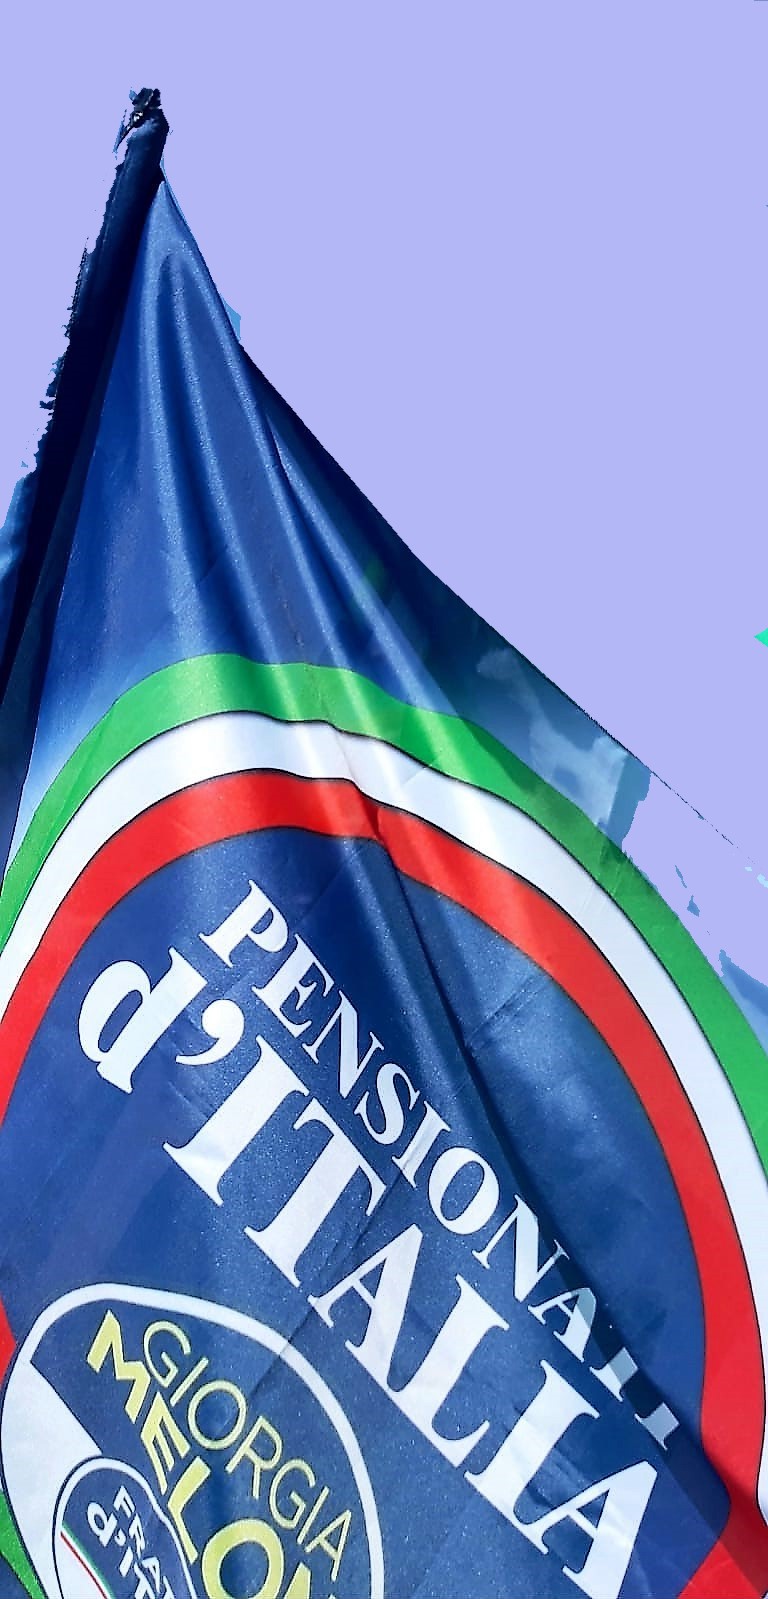 Articolo di Valfredo Porega per la tutela della Salute e della Sicurezza dei Pensionati Italiani. 8 gennaio 2019.